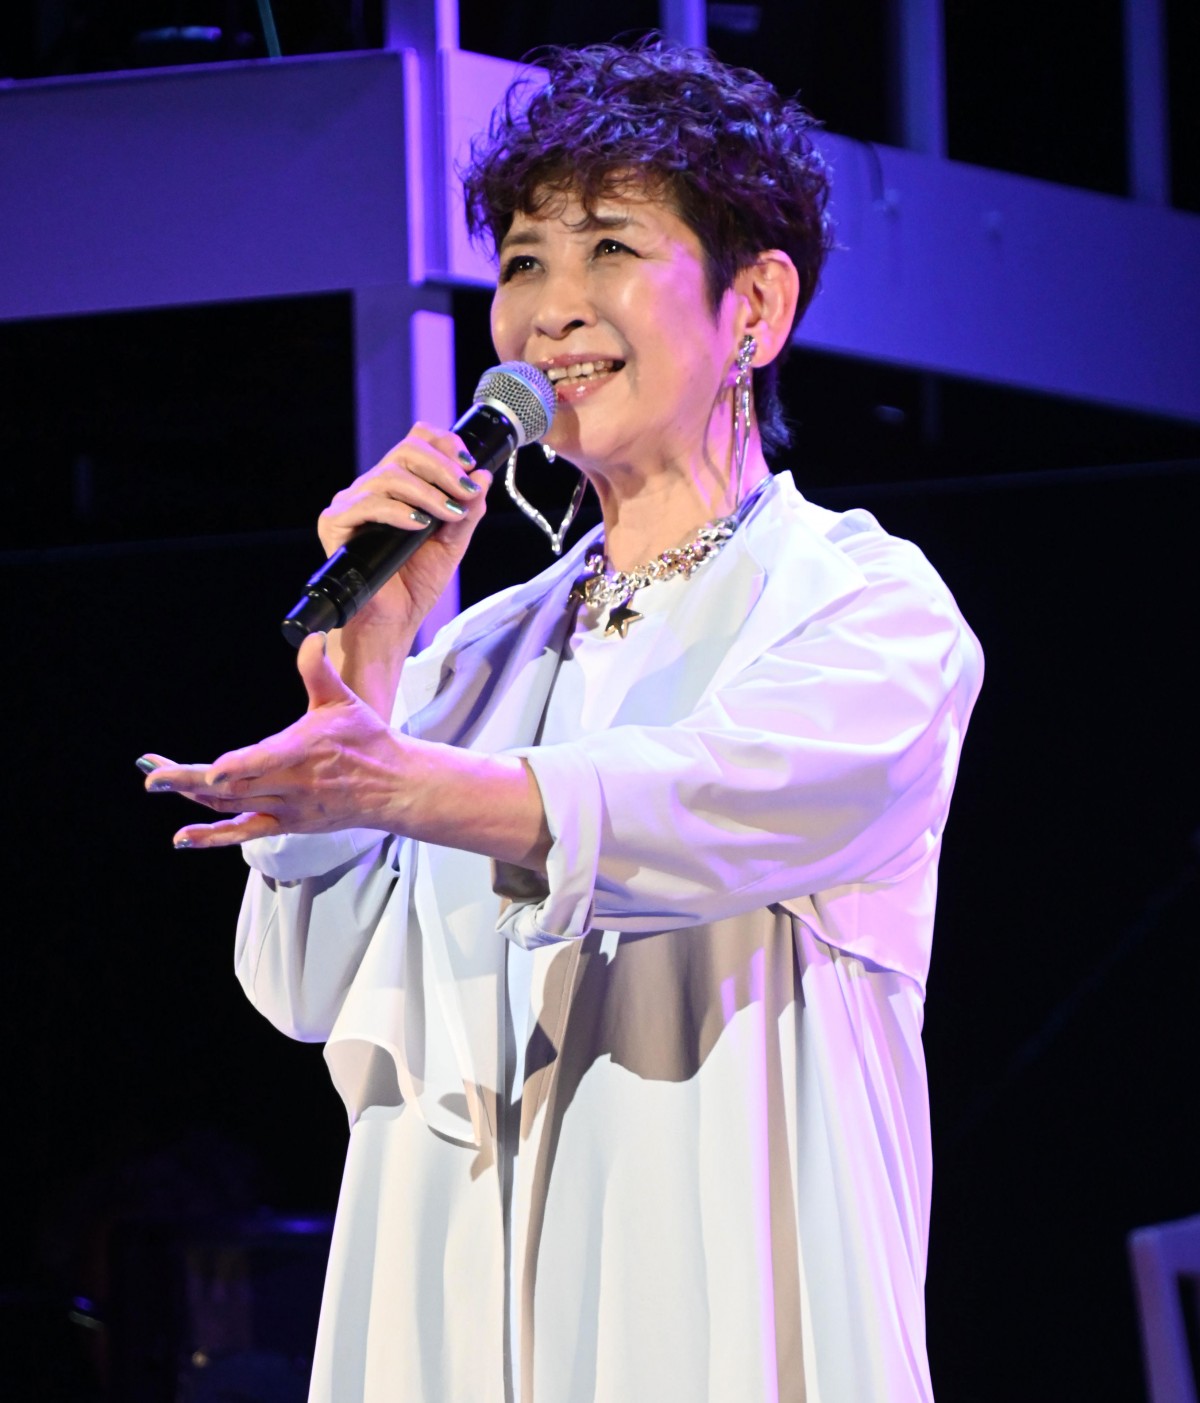 今陽子、「恋の季節」作曲家・いずみたく30回忌偲ぶ「末永く歌い続けることが感謝の気持ち」 | ORICON NEWS